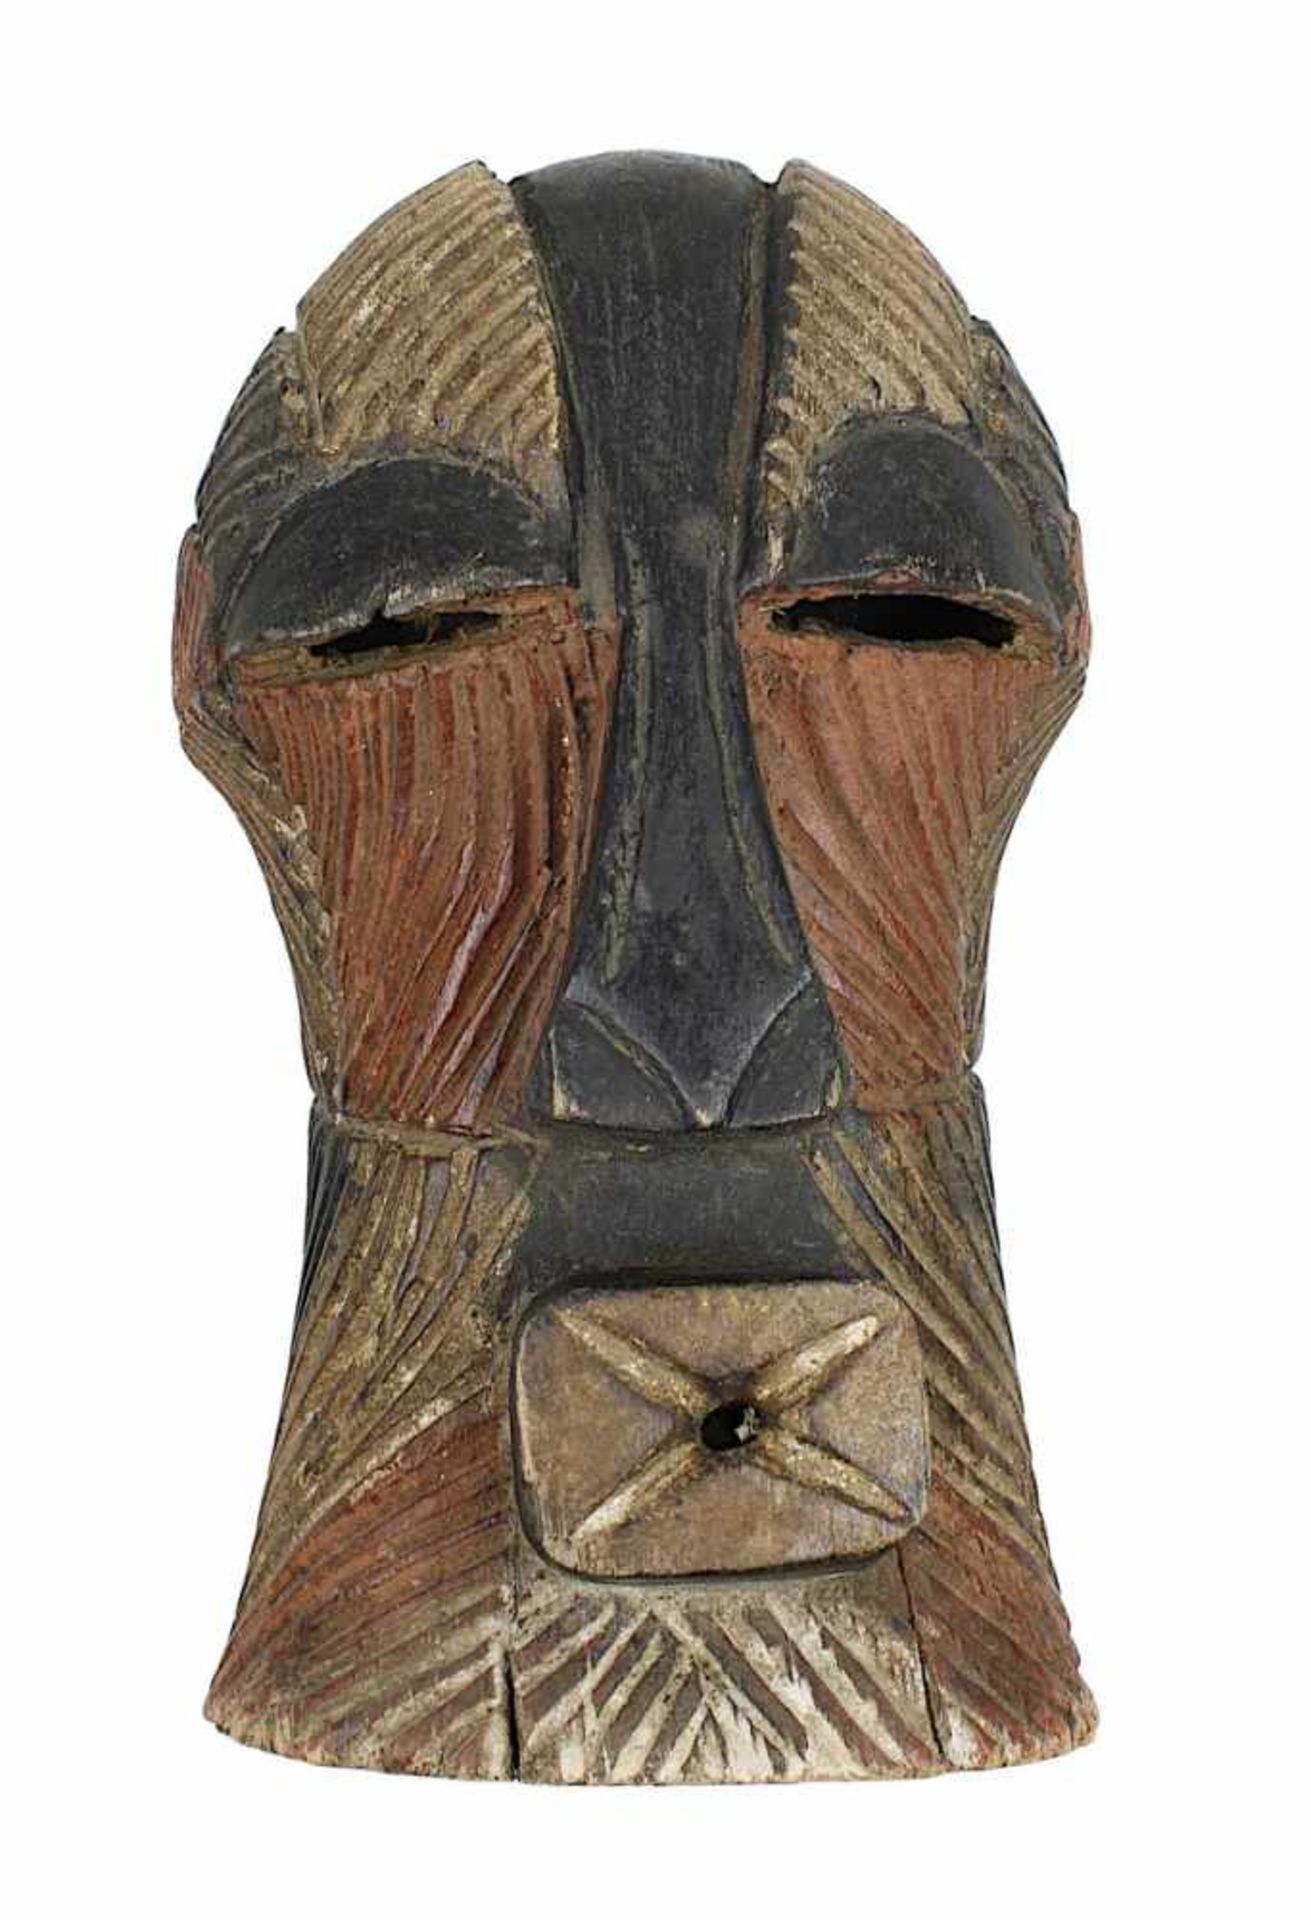 Maske kifwebe, Songye, D. R. Kongo, Holz geschnitzt und rot, schwarz und mit Kaolin bemalt, typische